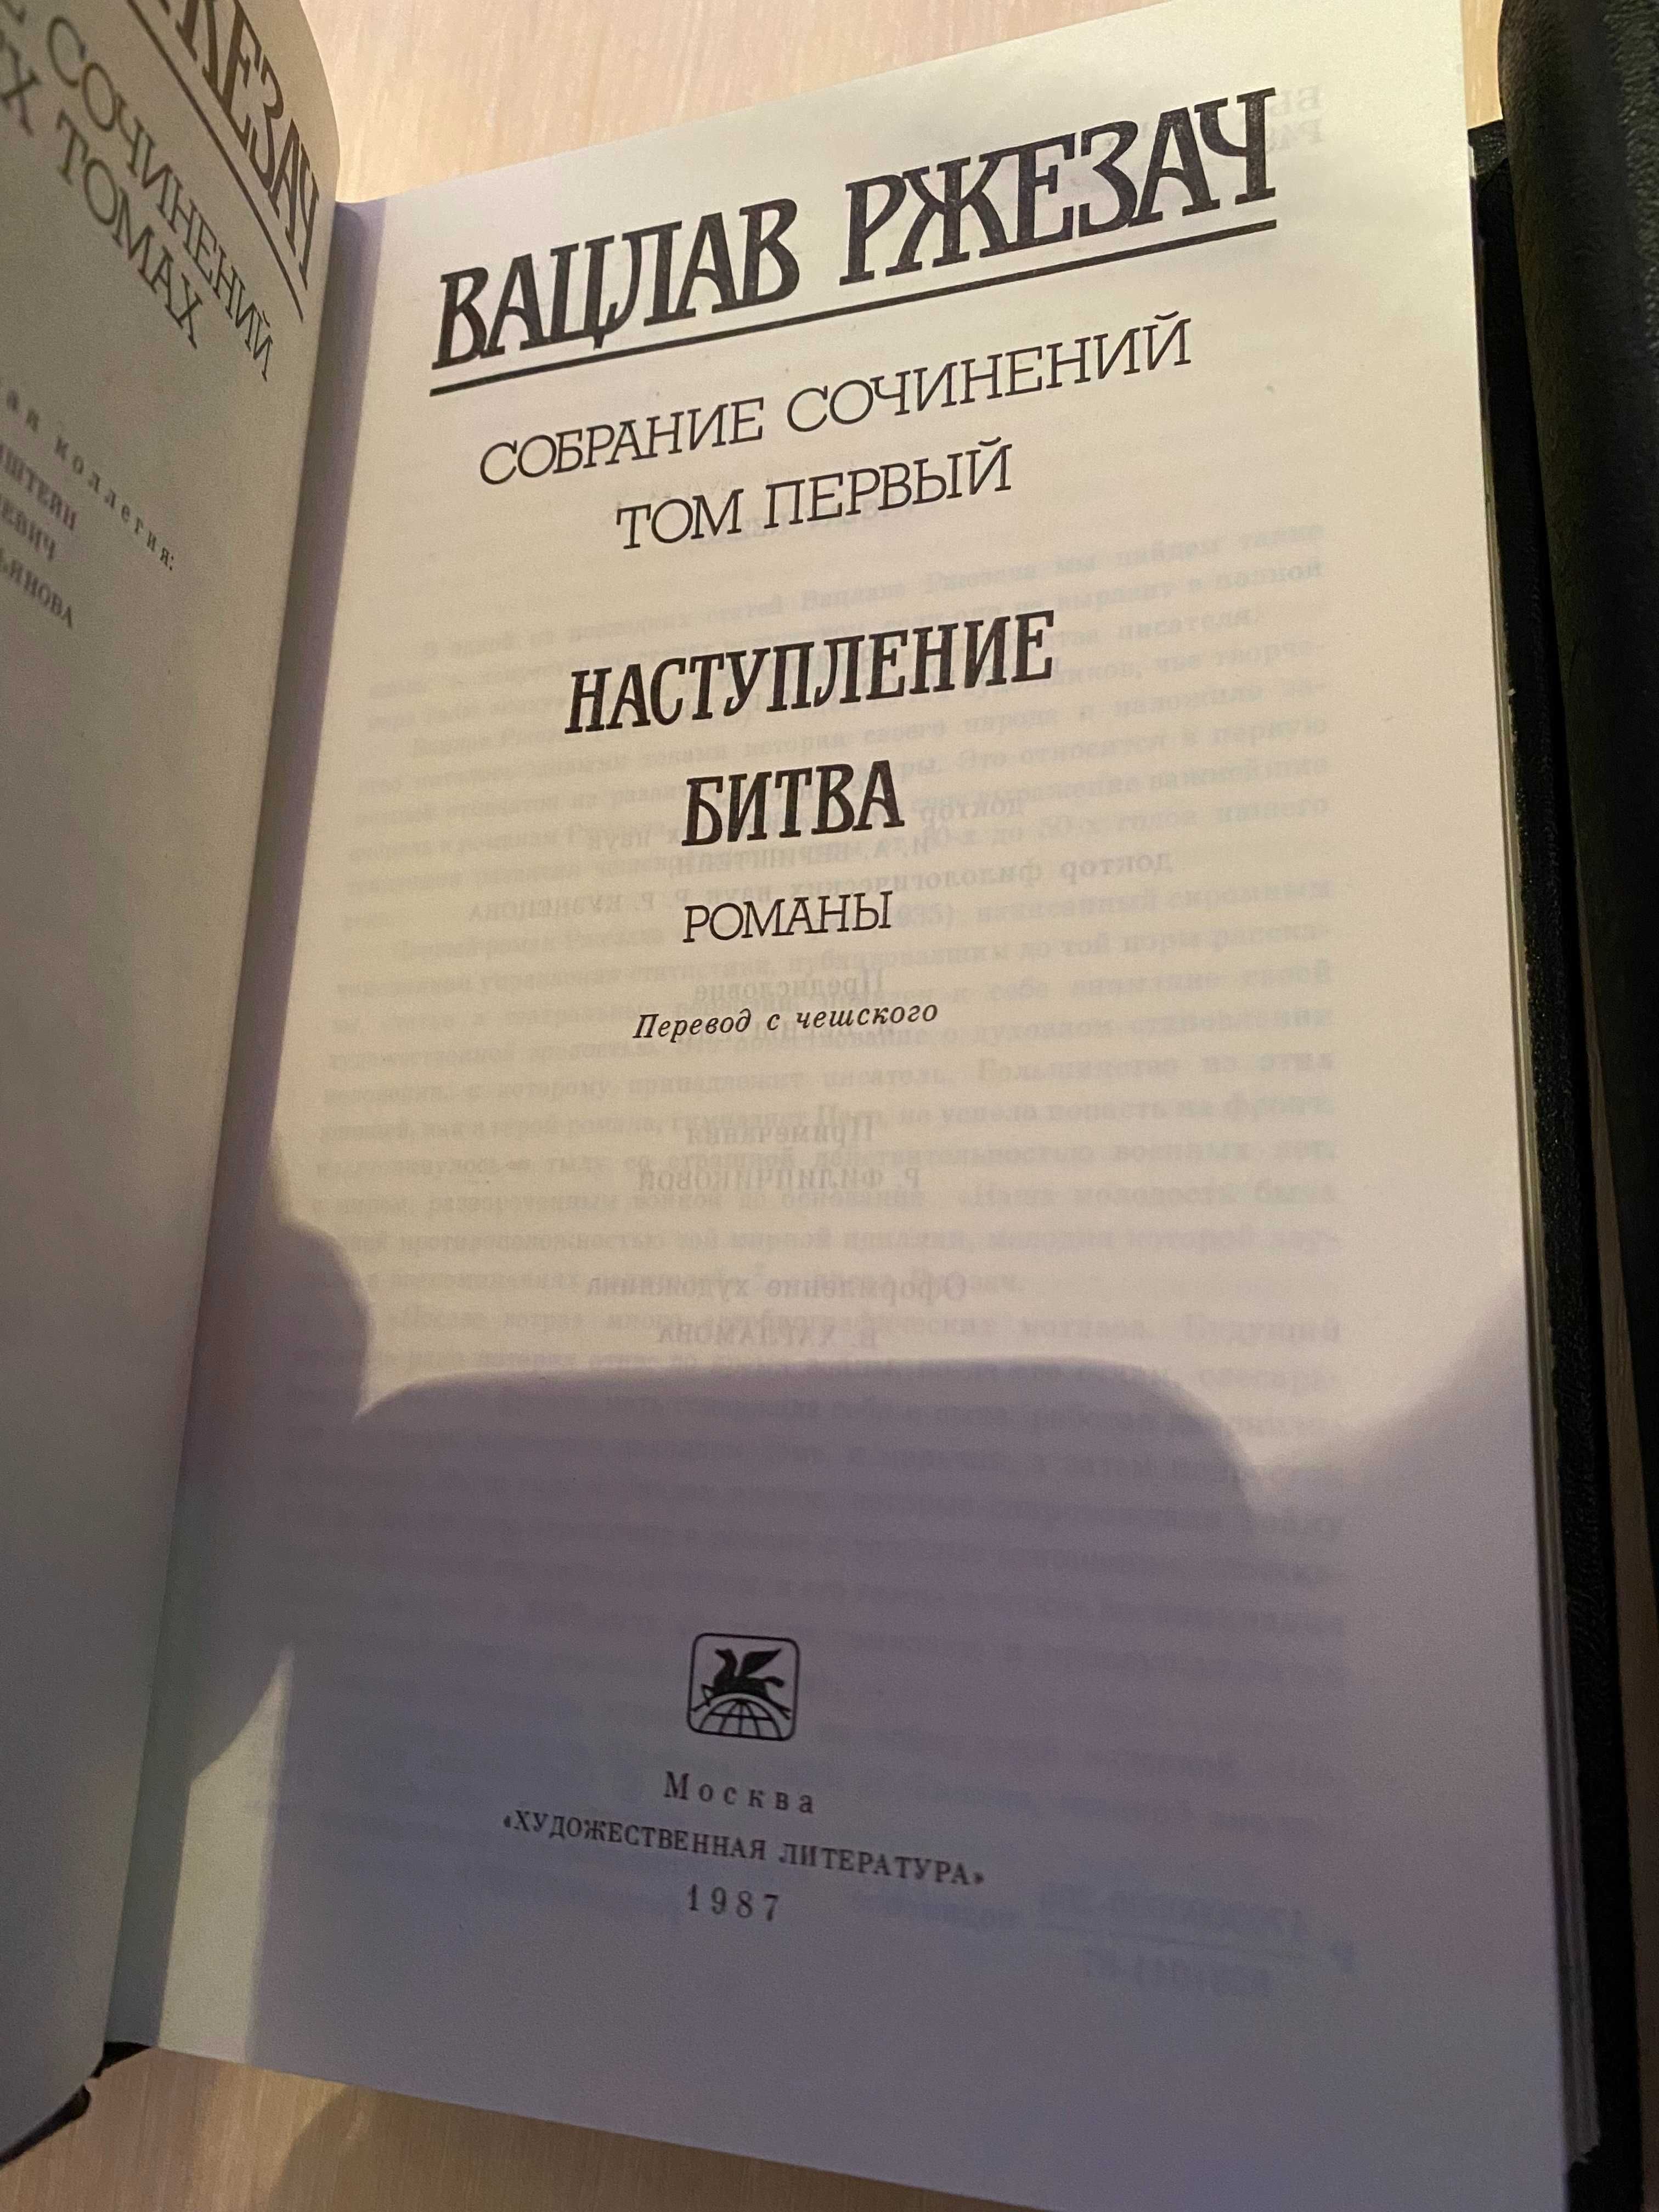 Собрание сочинений в 3 томах  Вацлав Ржезач  Идеал Новые